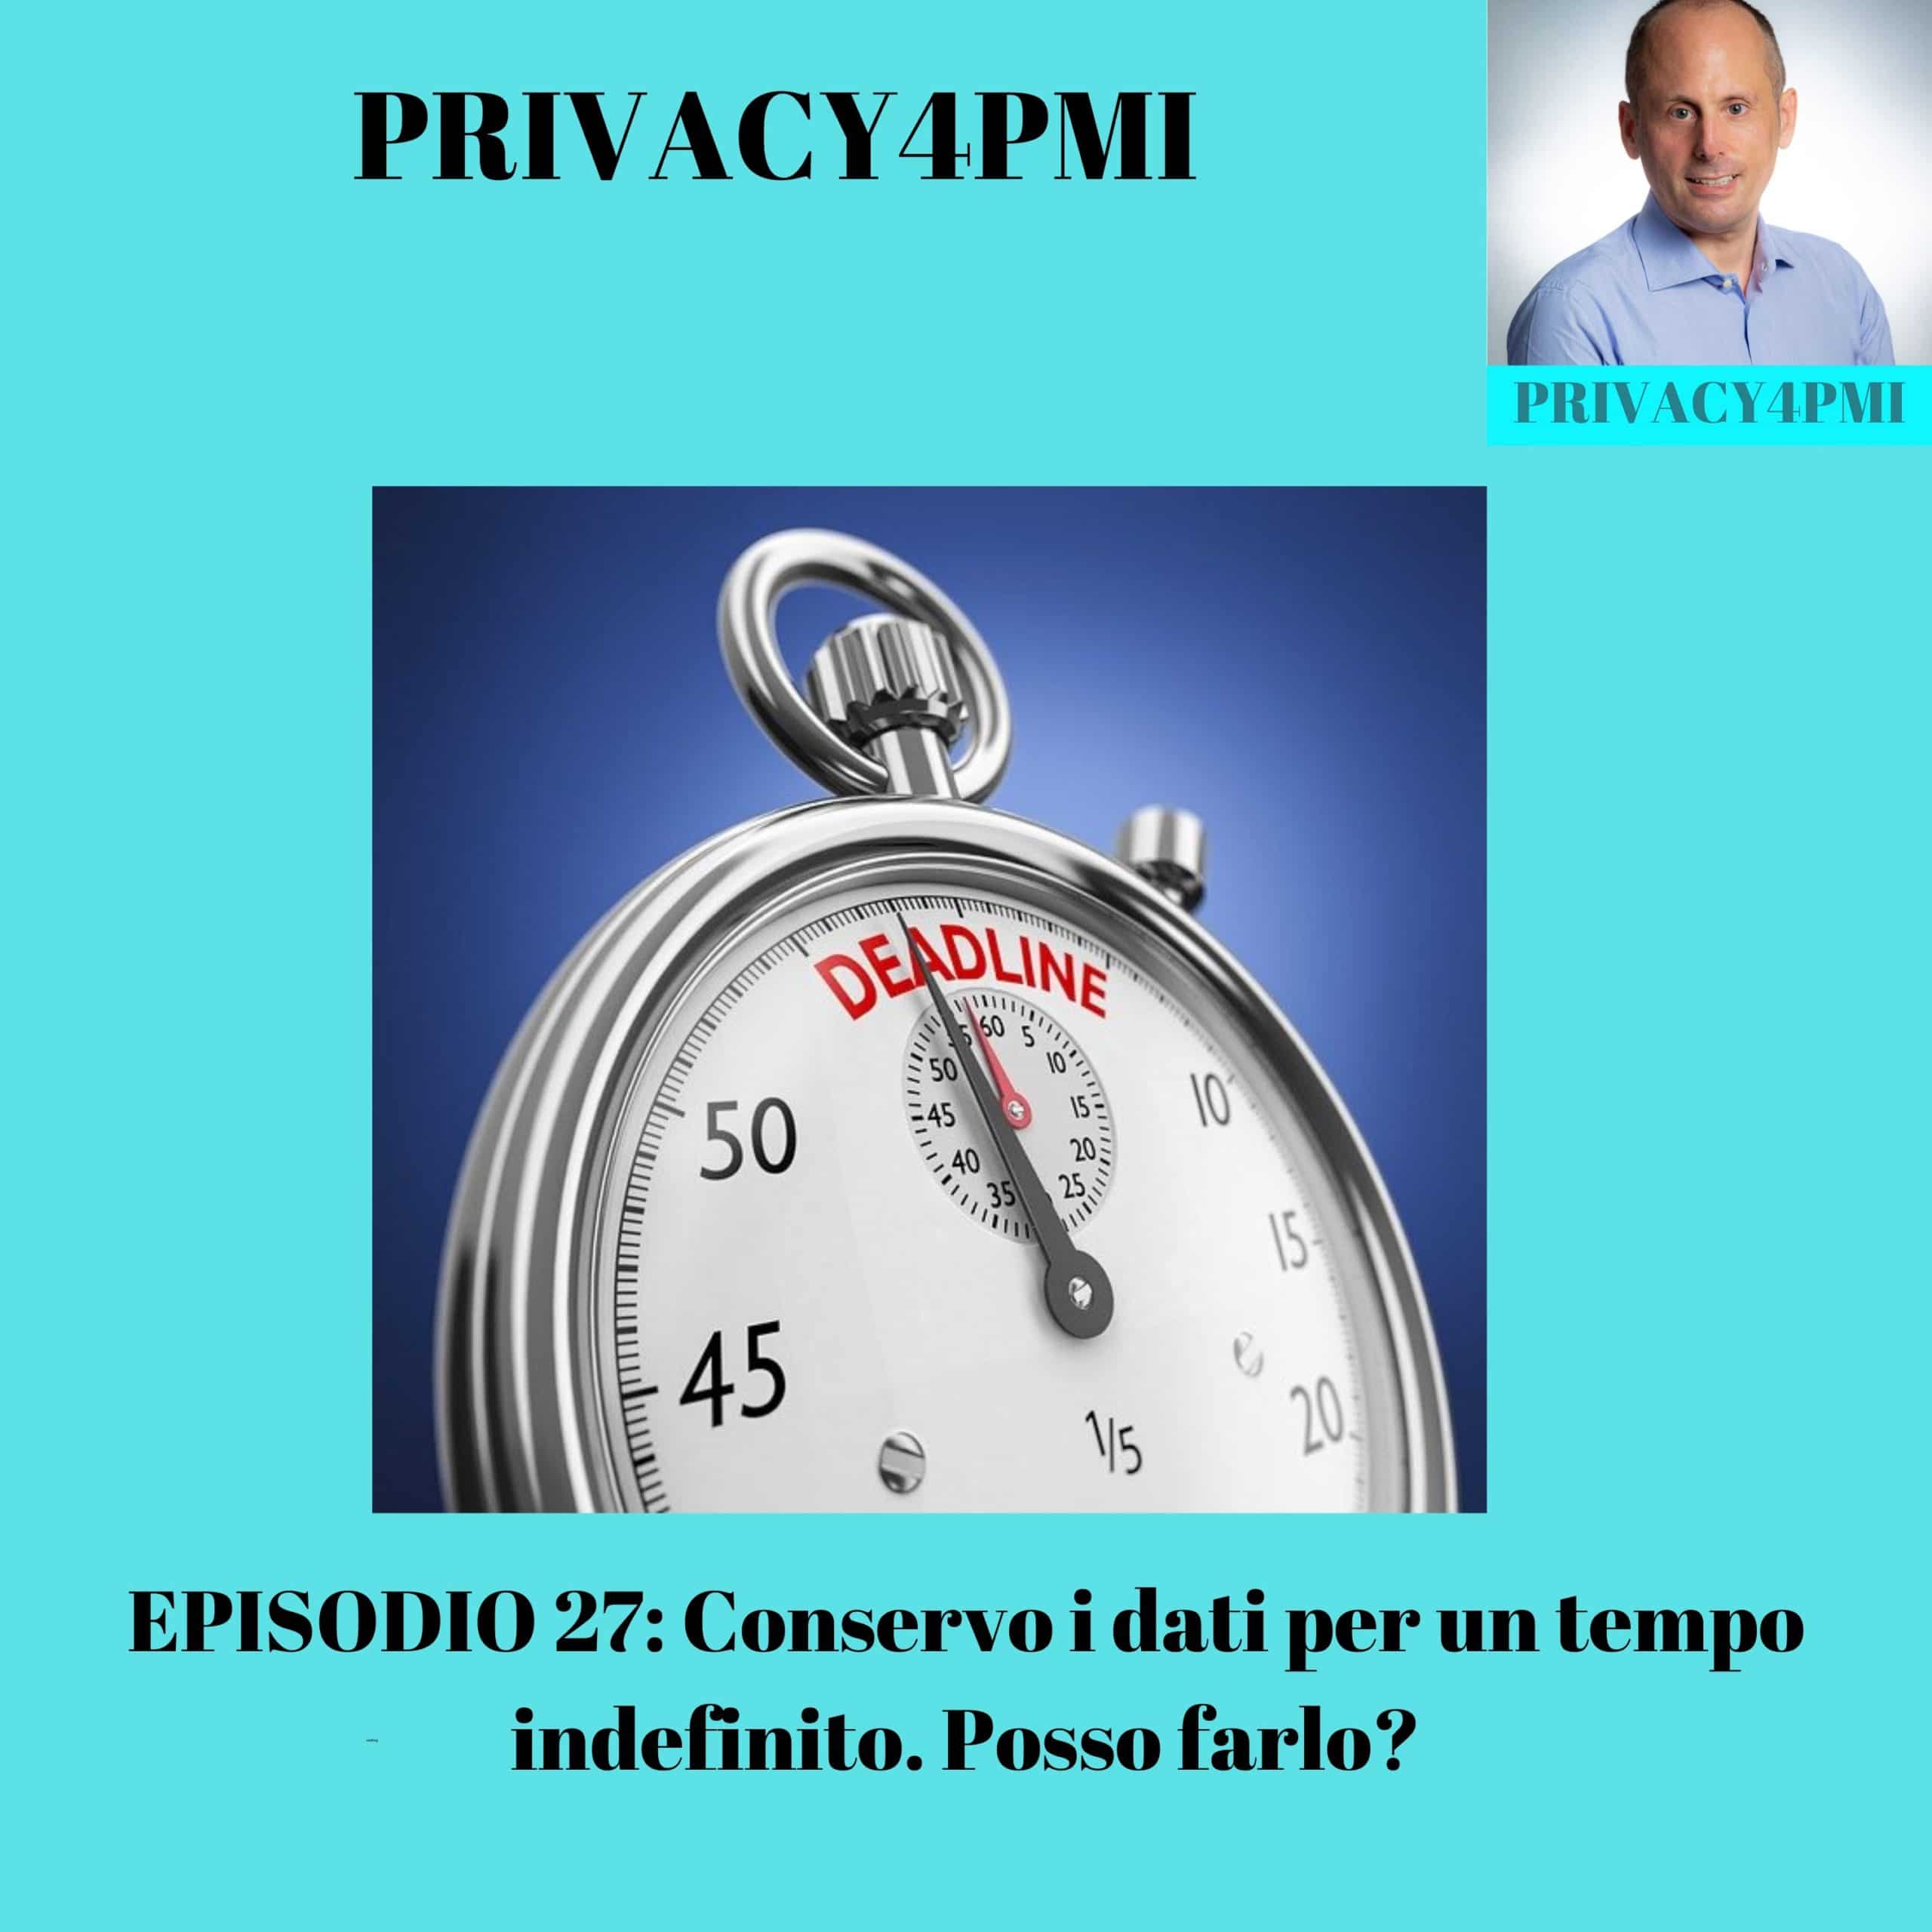 Conservazione dei dati e GDPR: come comportarsi? Lo spiega Edoardo Facchini, consulente privacy in questo Episodio 27 del suo podcast Privacy4PMI https://www.spreaker.com/user/11431935/episodio-27-conservo-i-dati-per-un-tempo